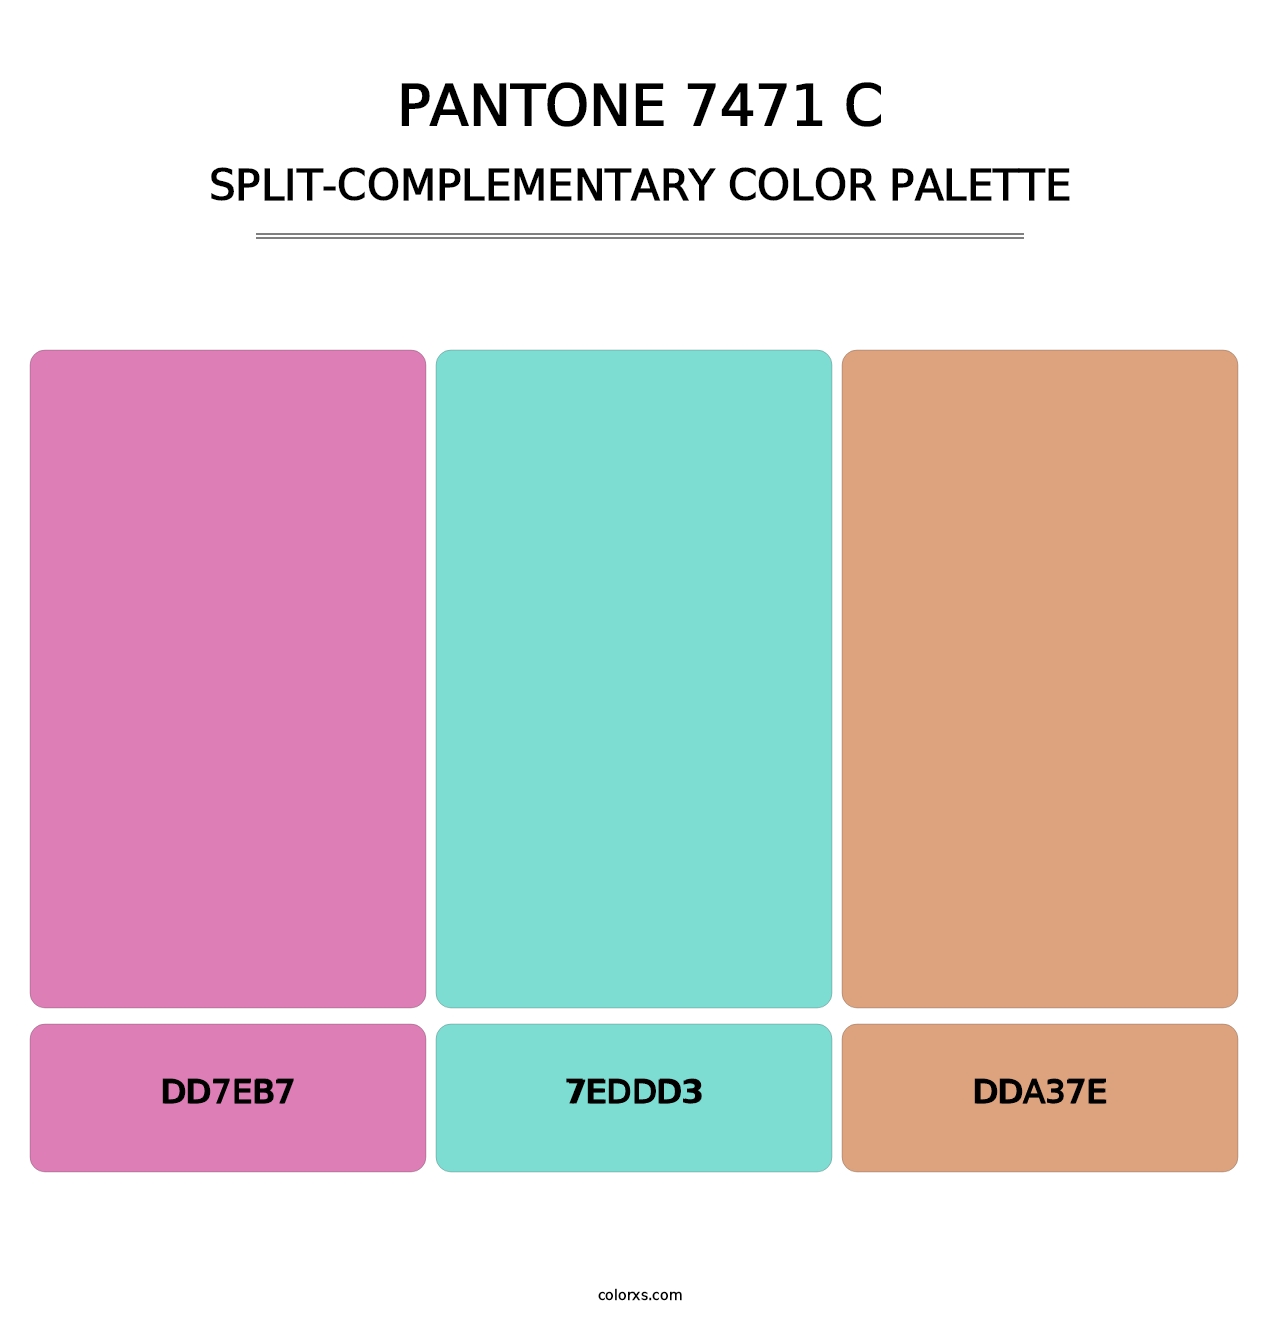 PANTONE 7471 C - Split-Complementary Color Palette